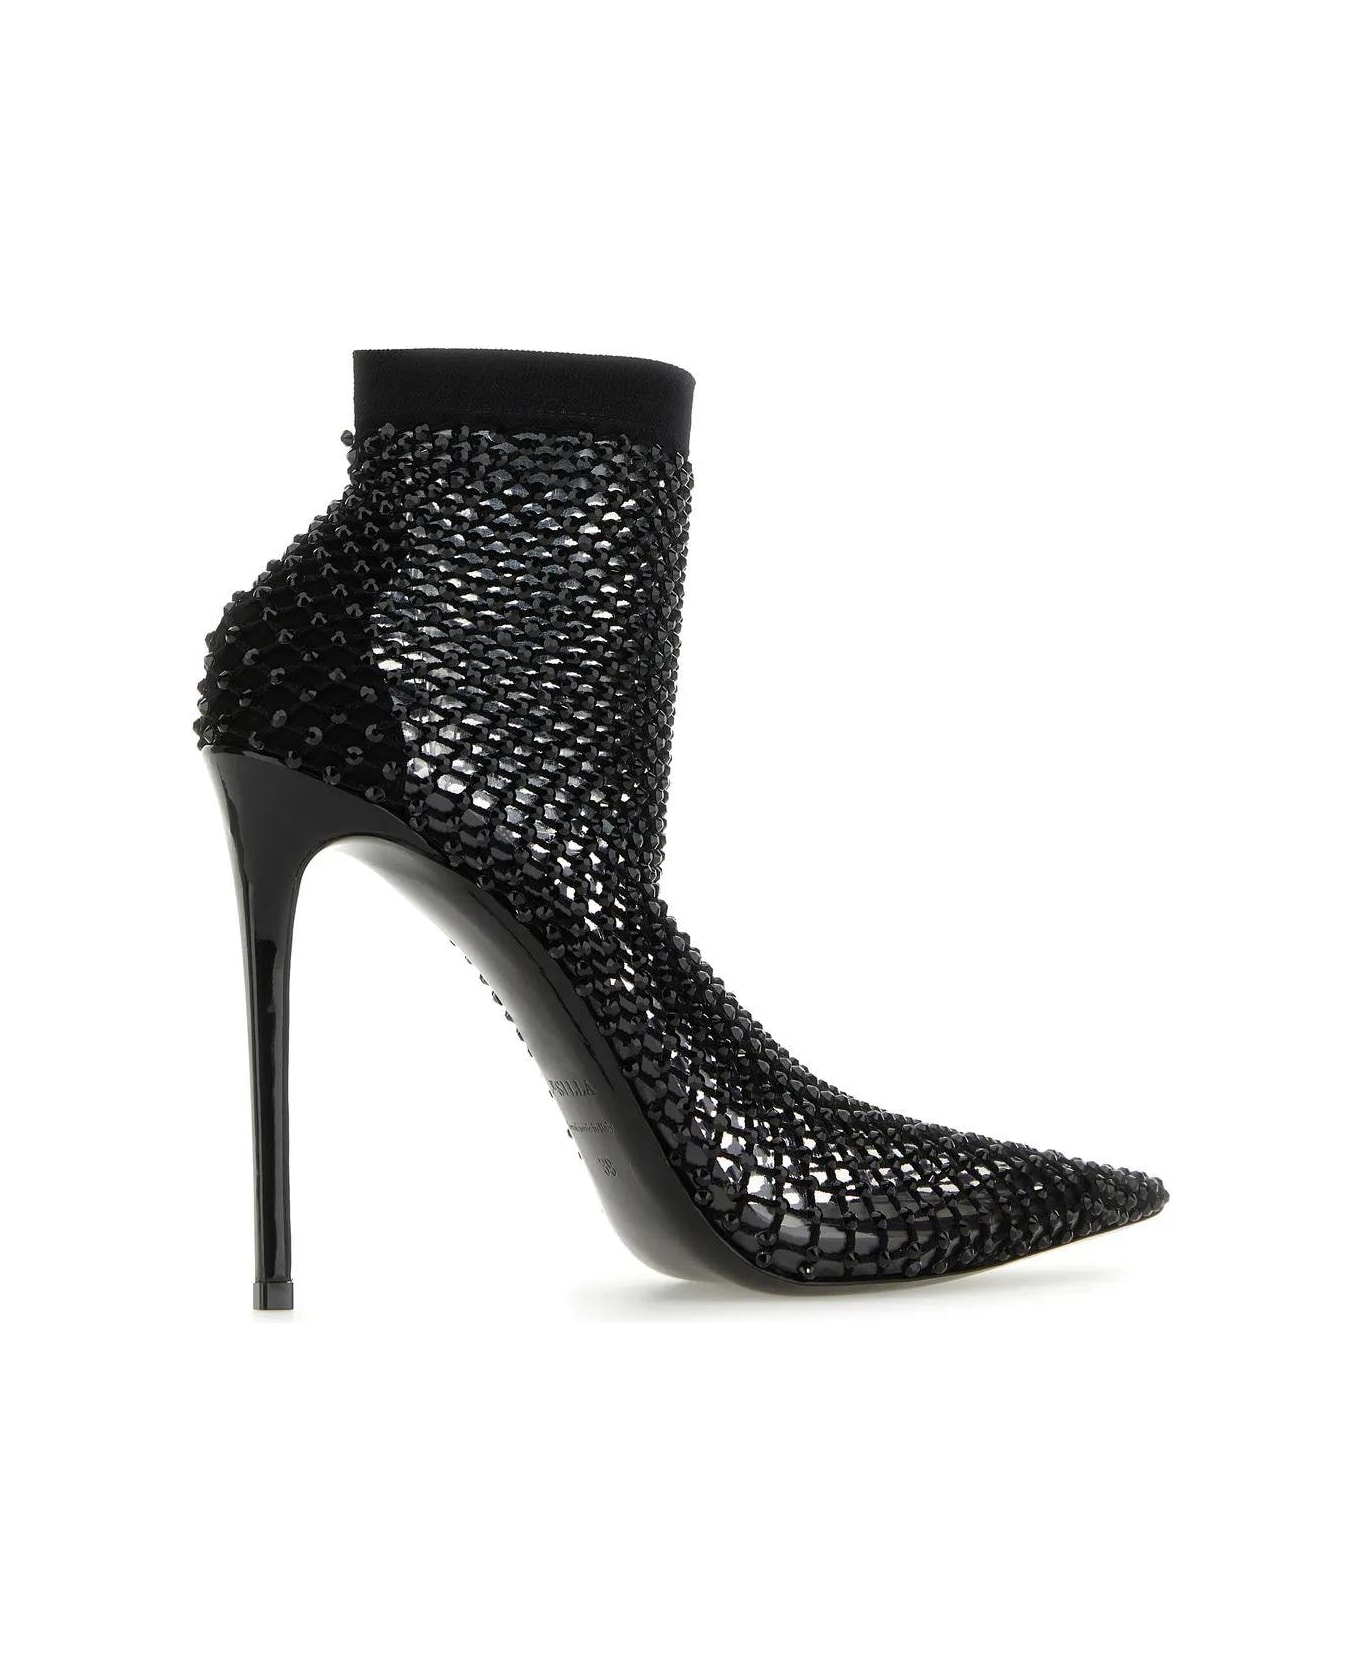 Le Silla Black Mesh Gilda Ankle Boots - Black